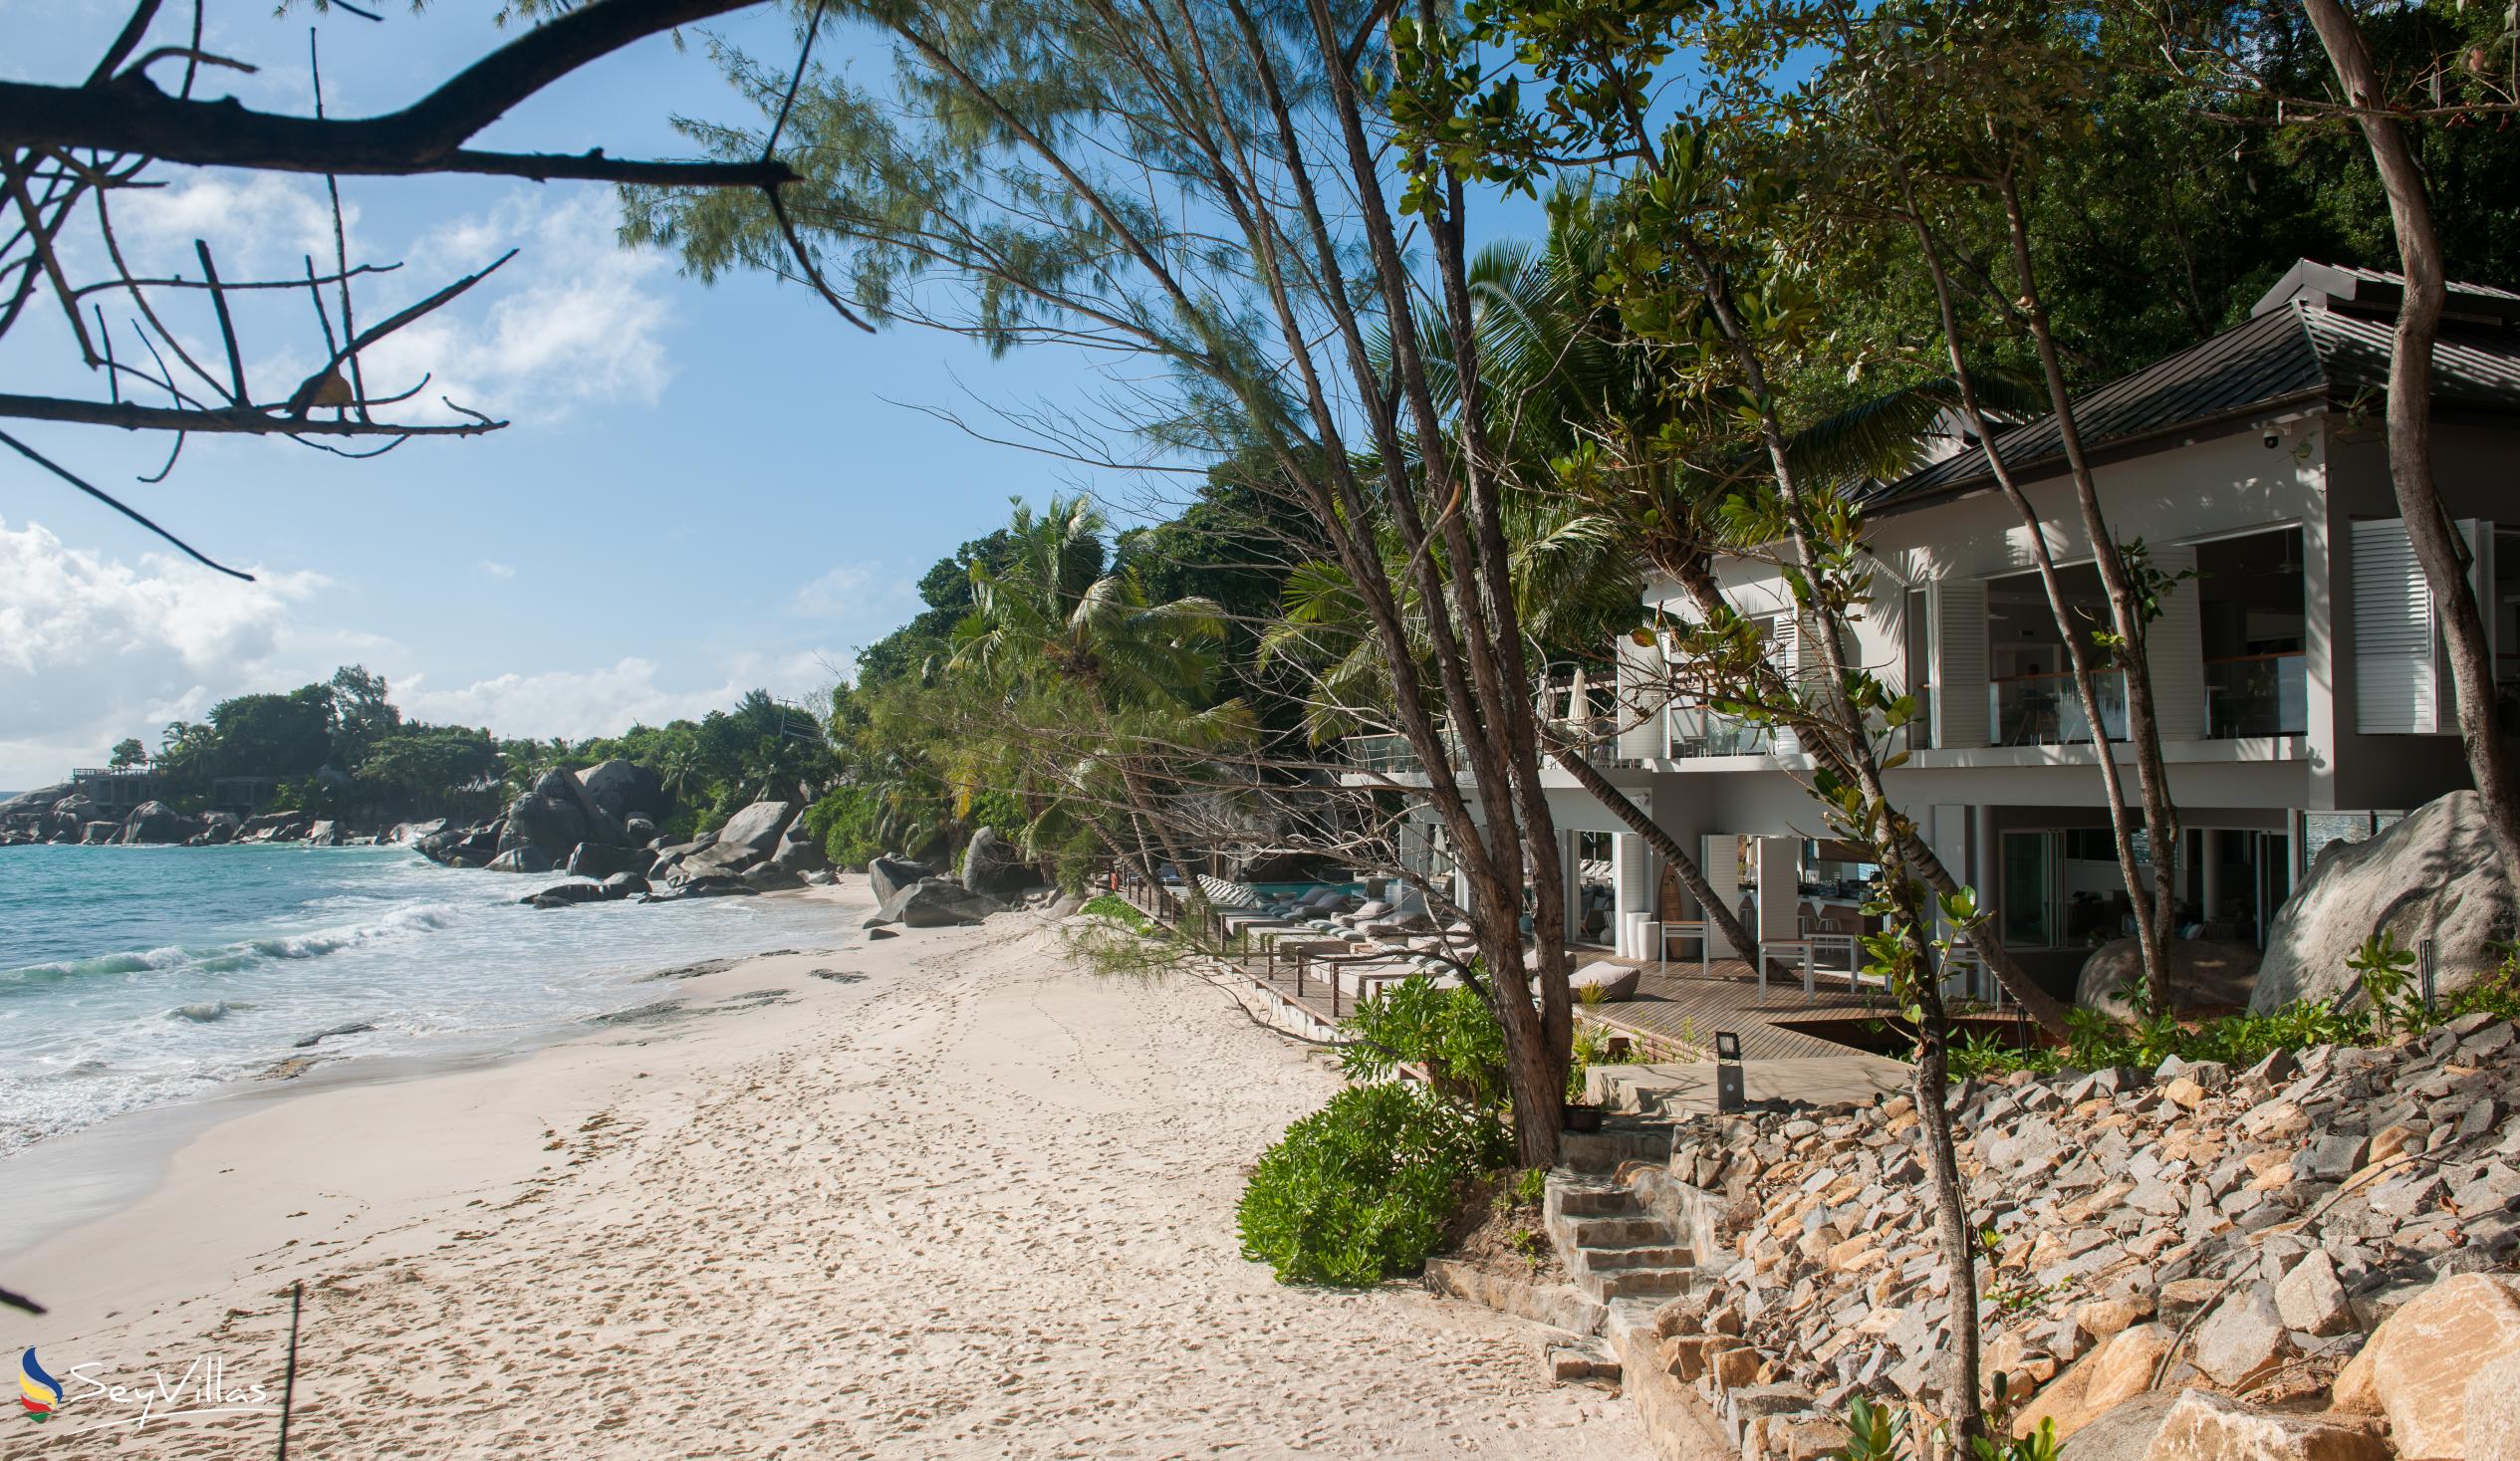 Foto 18: Carana Beach Hotel - Aussenbereich - Mahé (Seychellen)